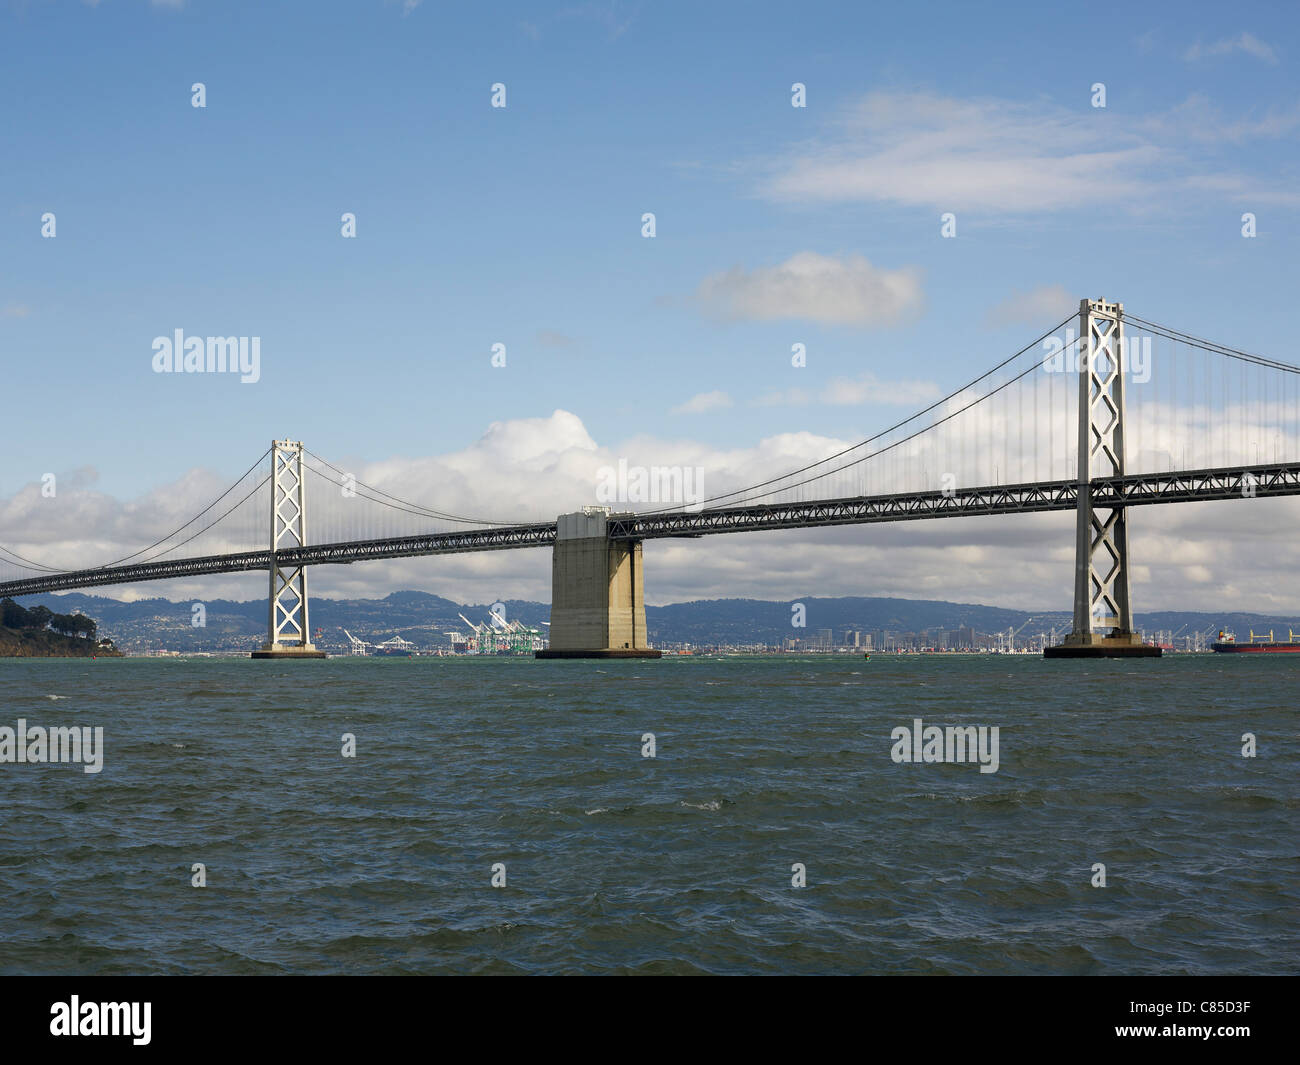 San Francisco-Oakland Bay Bridge, San Francisco Bay, San Francisco, California, USA Stock Photo